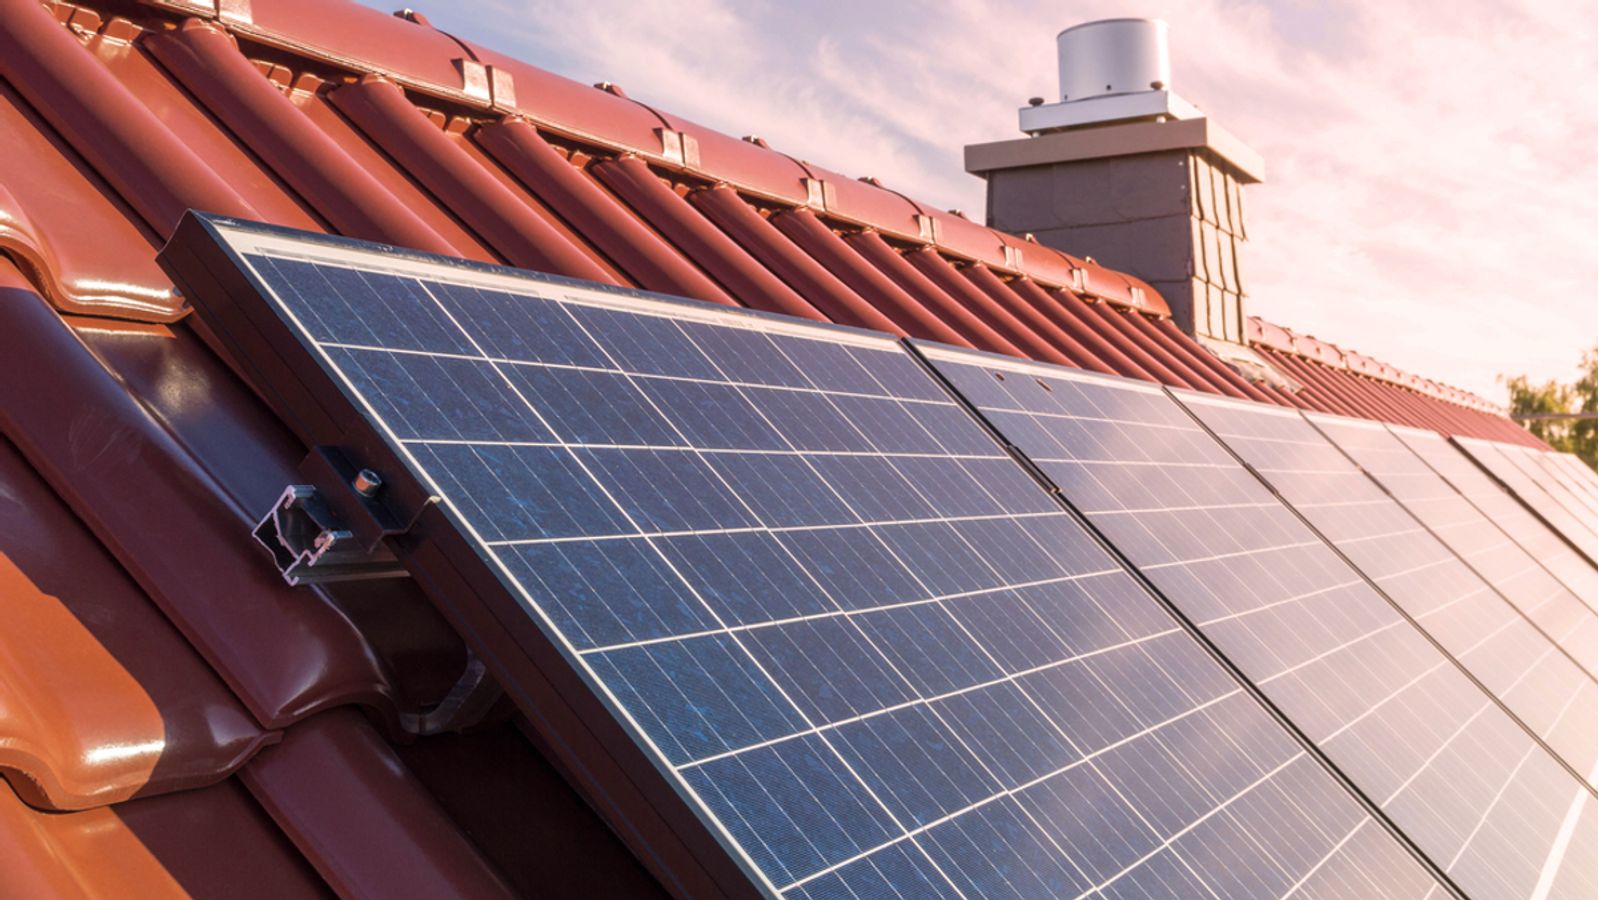 Solarstrom darf nicht ins Netz: Jede Kilowattstunde zählt – doch